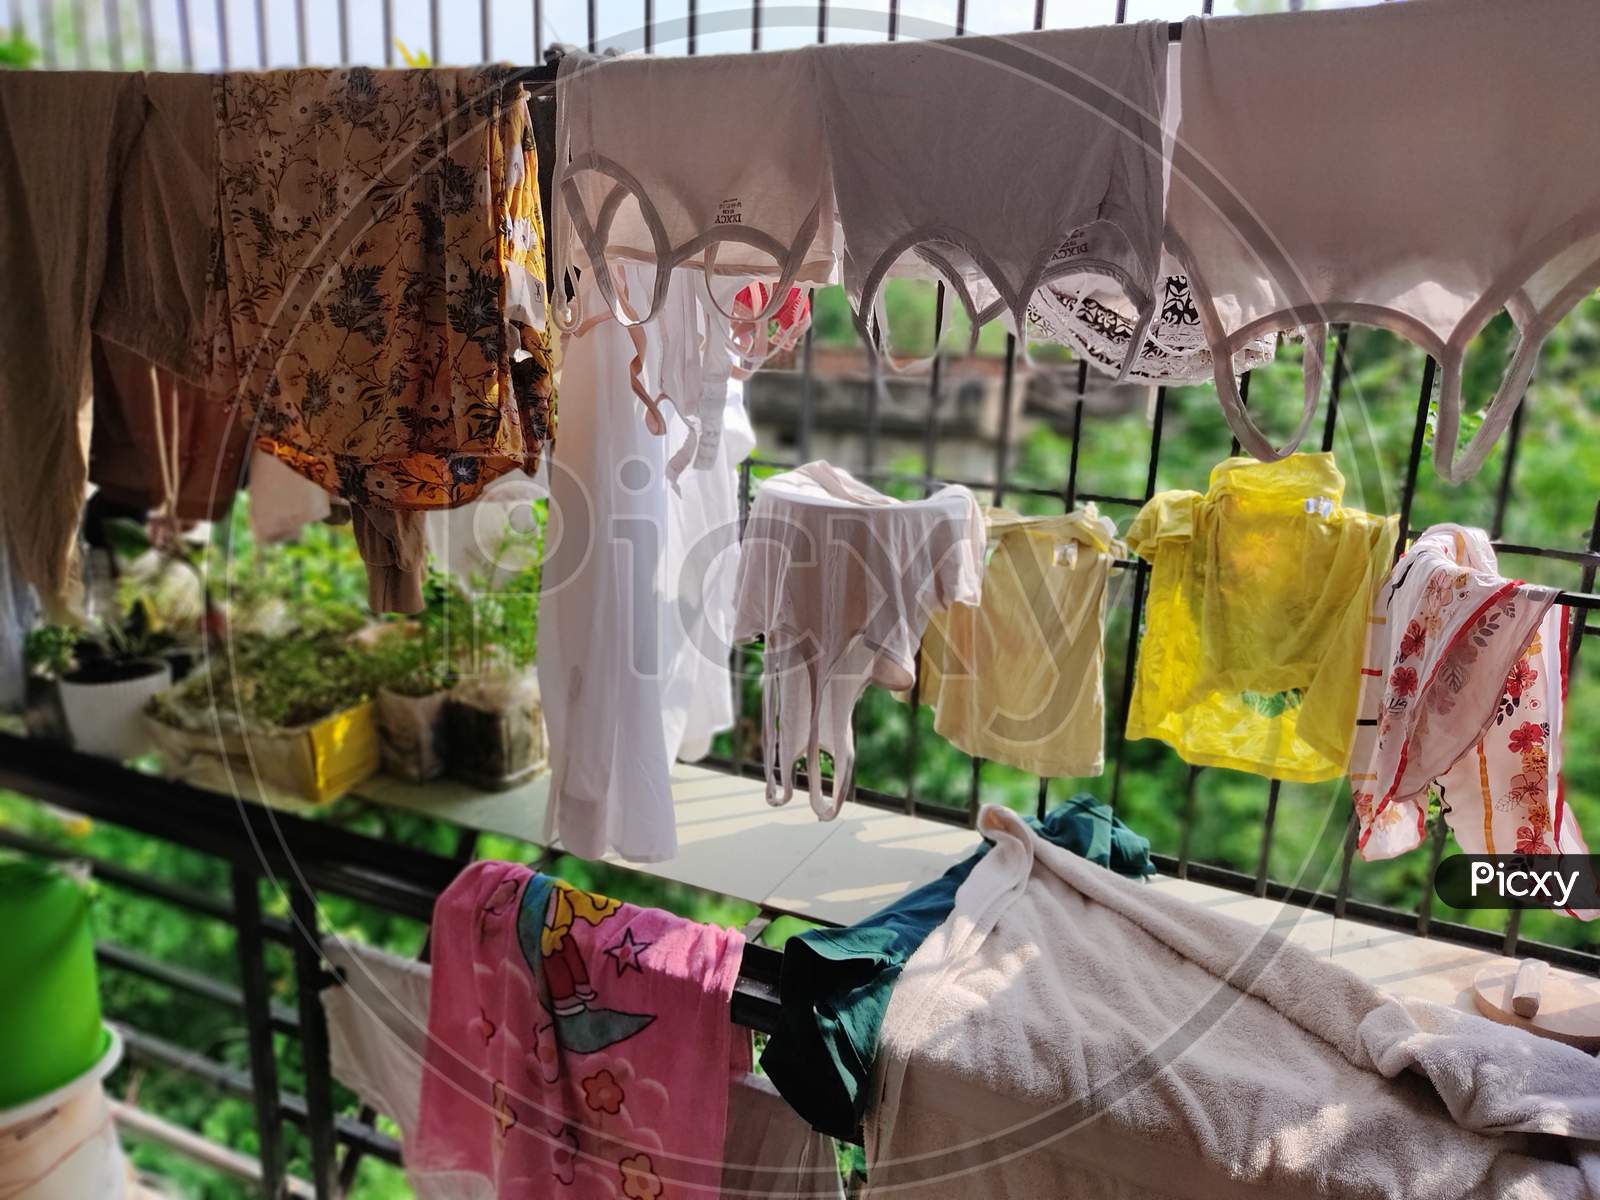 drying of cloth in balcony in rainy season